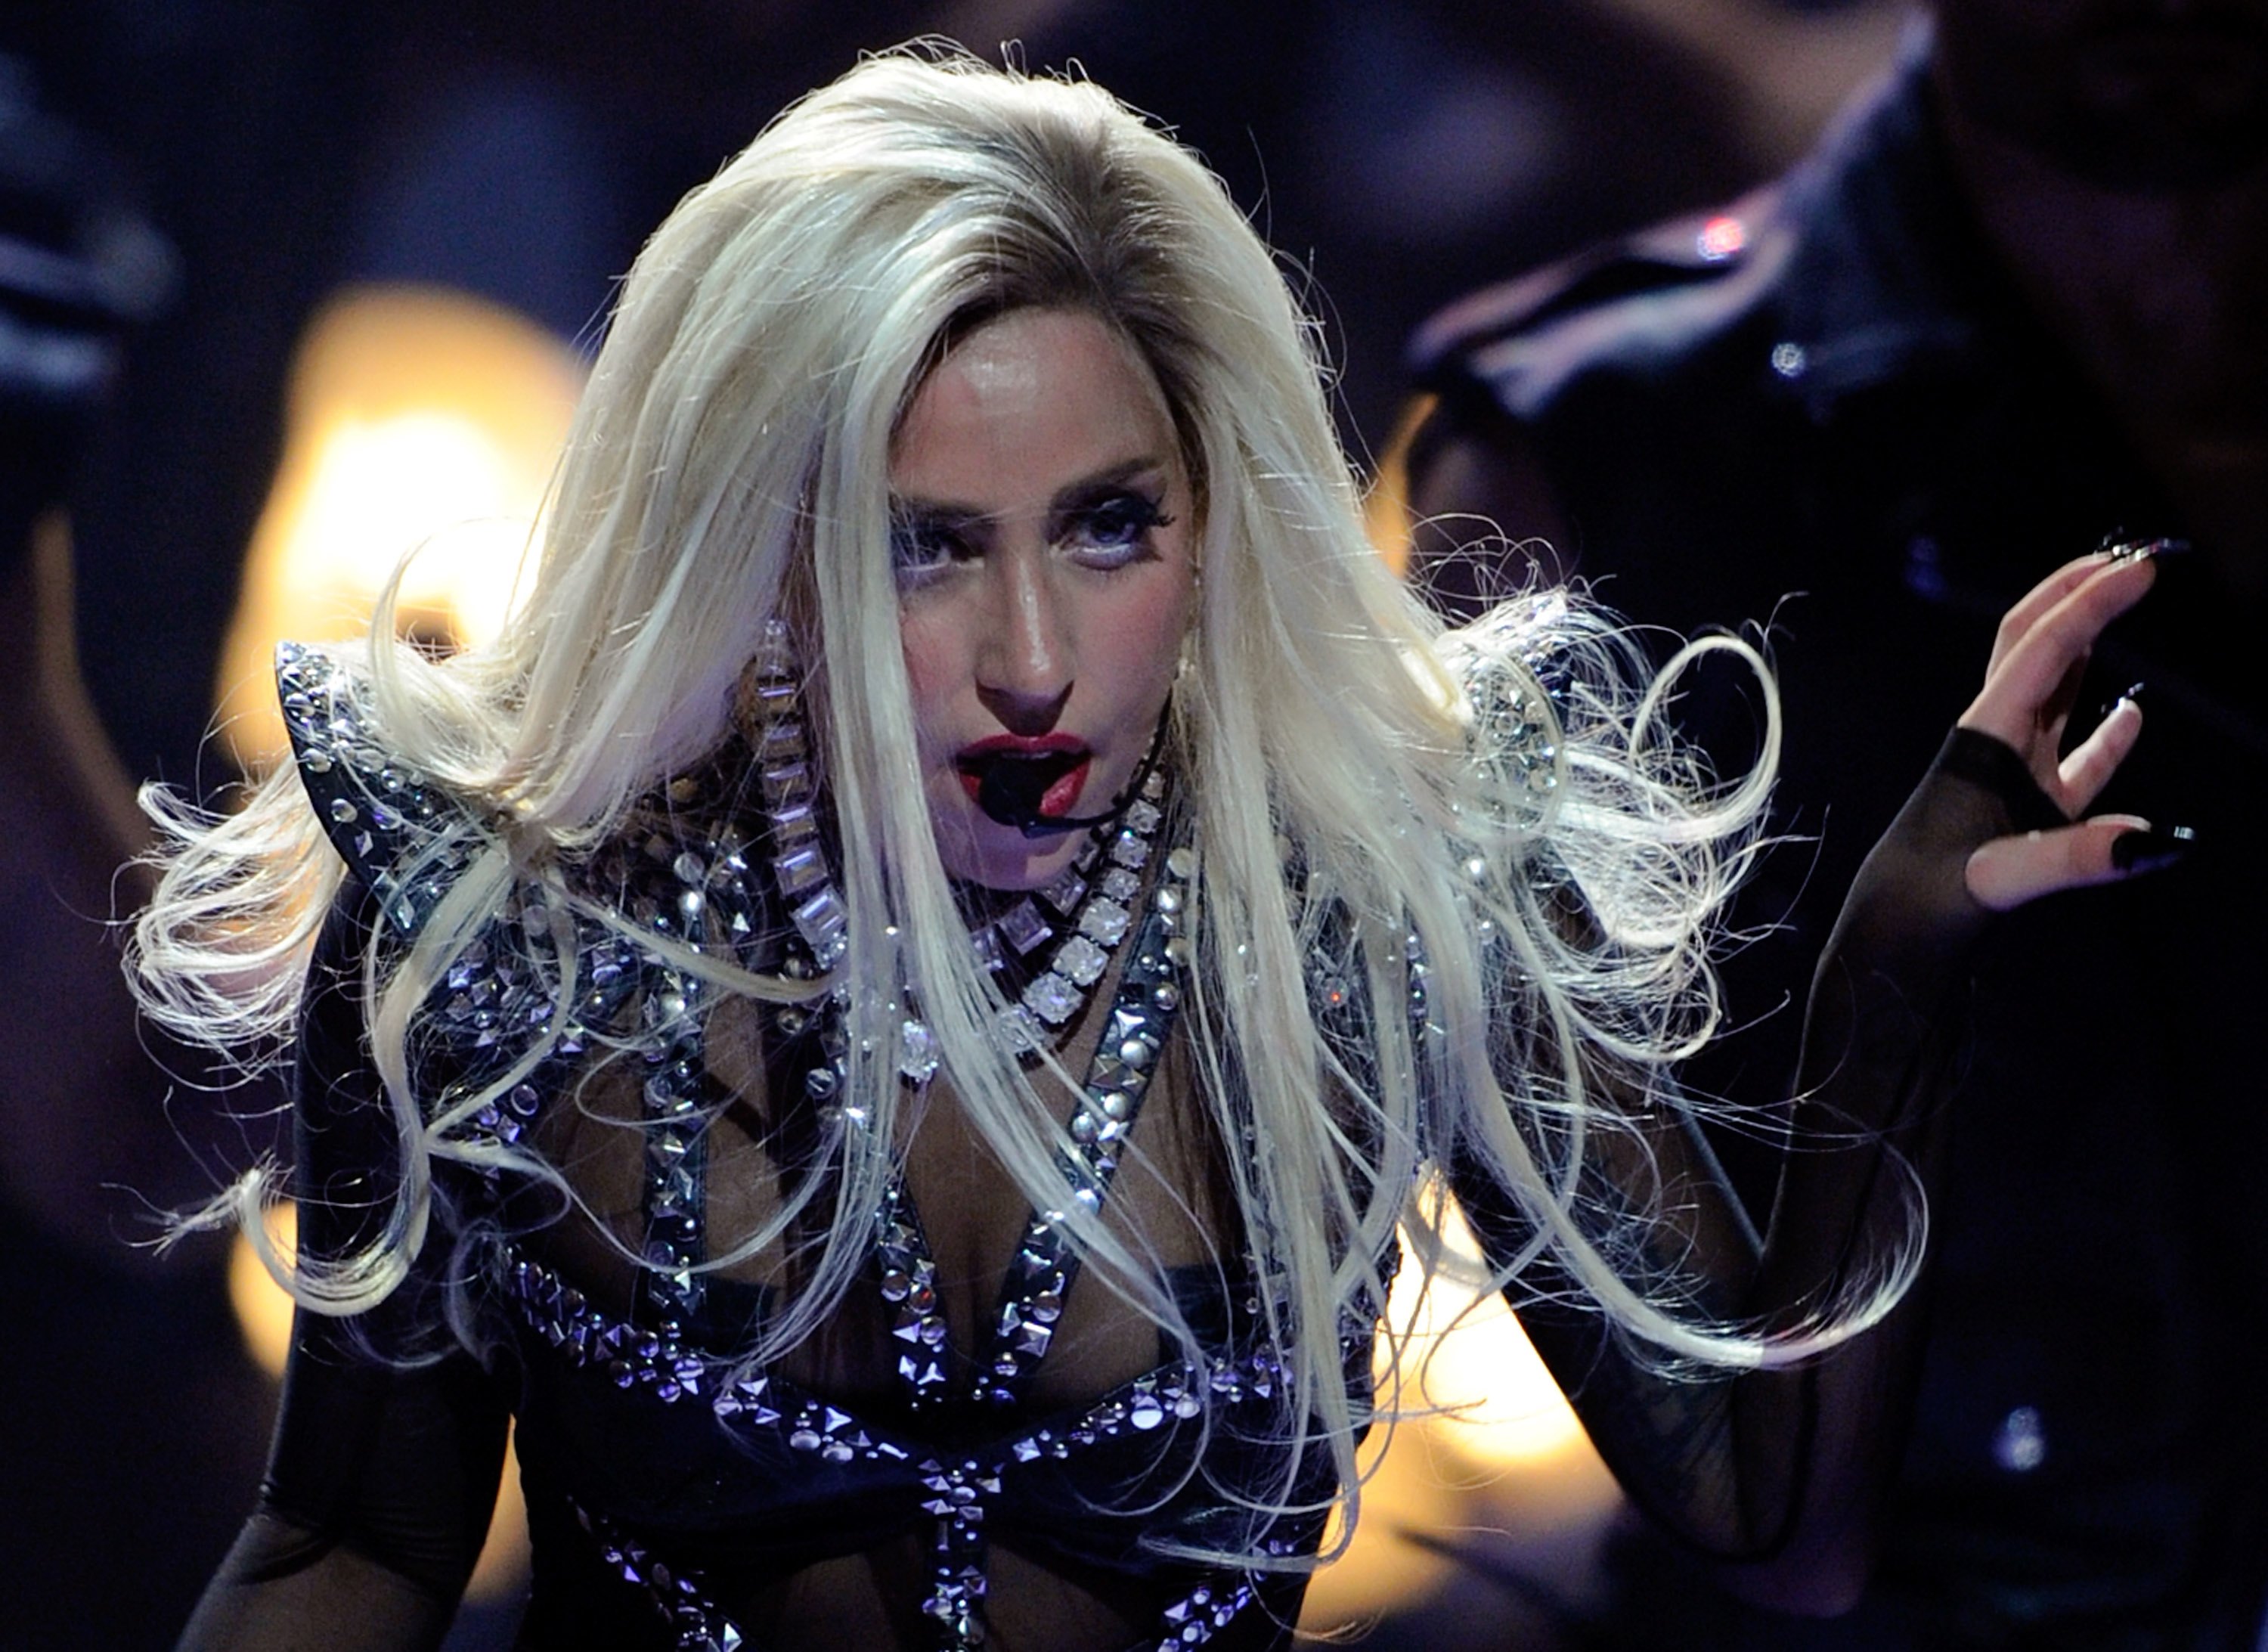 El biopic de Lady Gaga debe ser un alegato a la superación personal